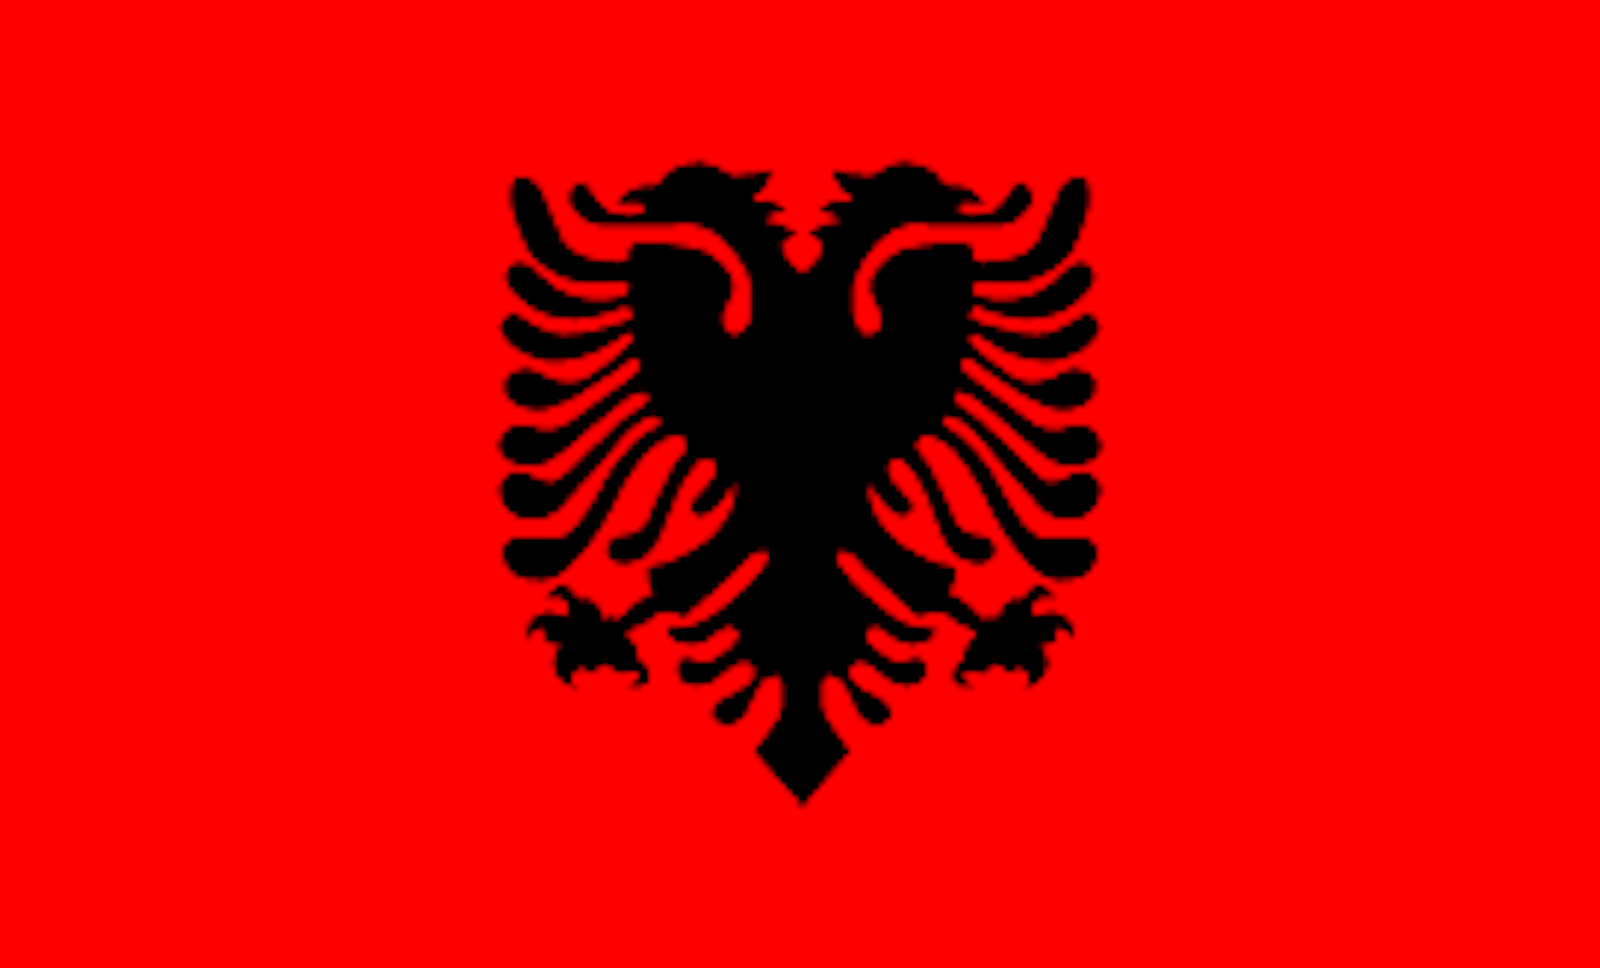 Vodafone Albania